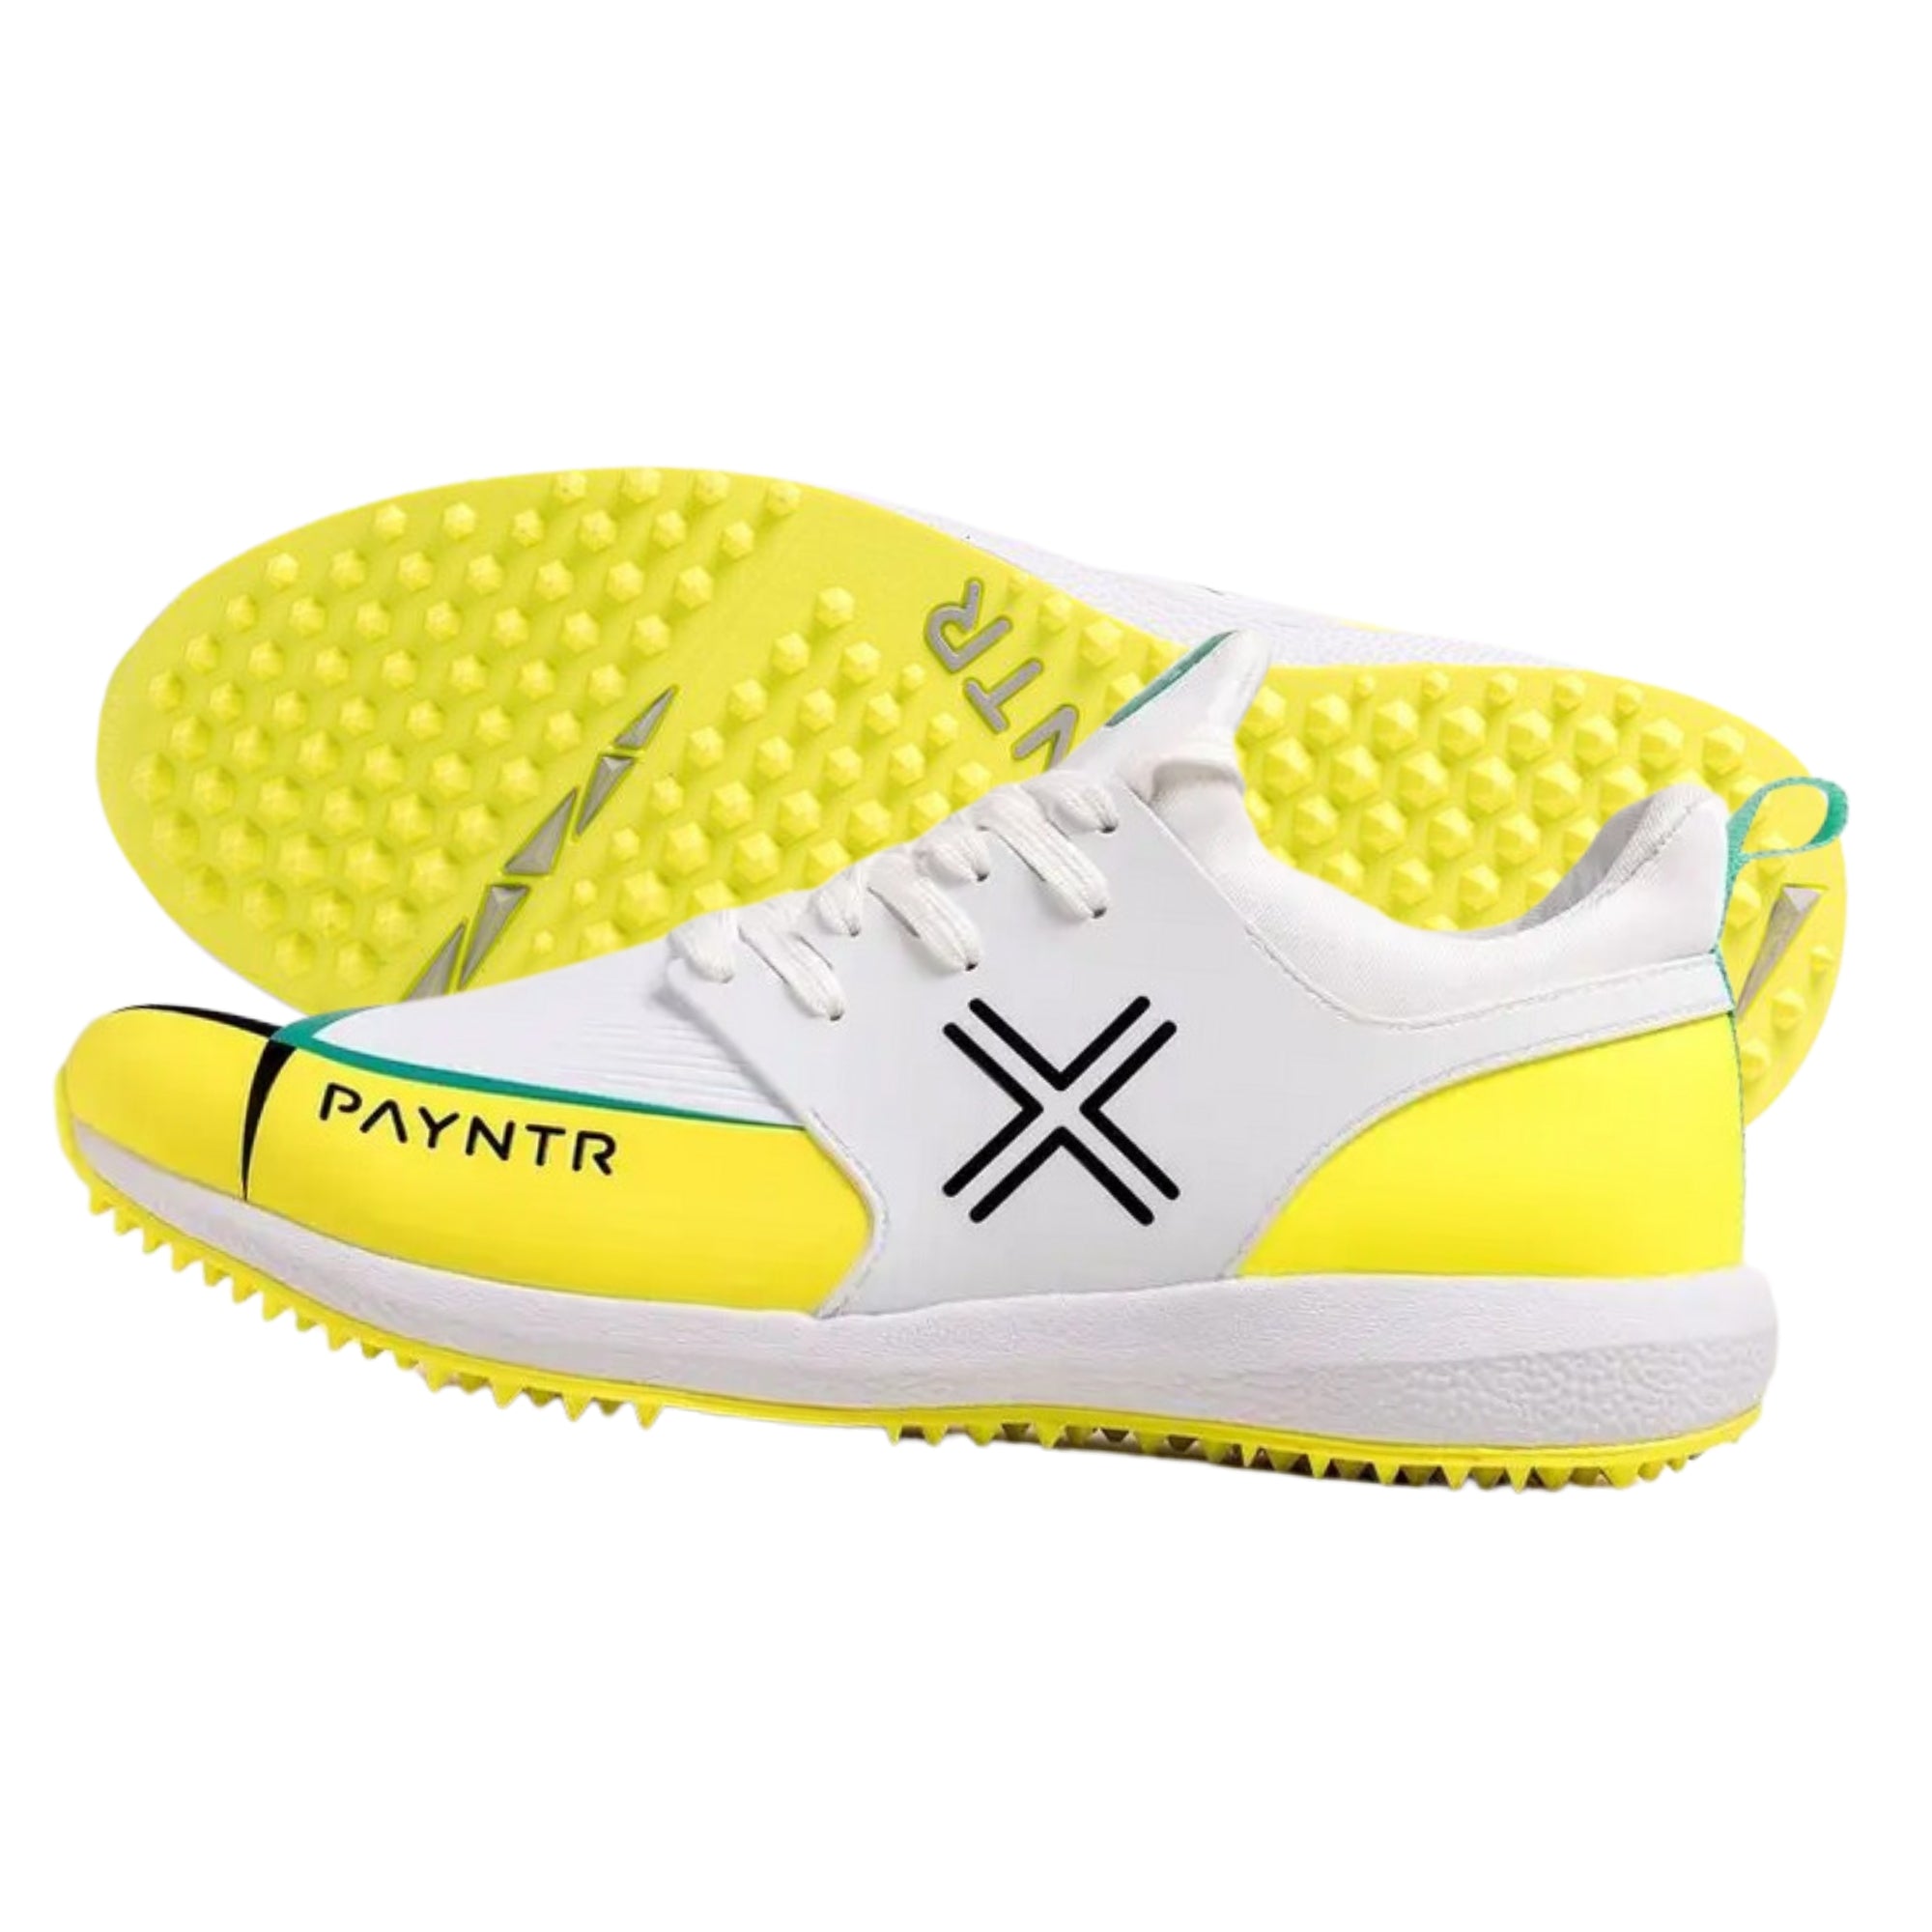 Payntr cricket shoes, Model X MK3 Evo Pimple - White/Yellow